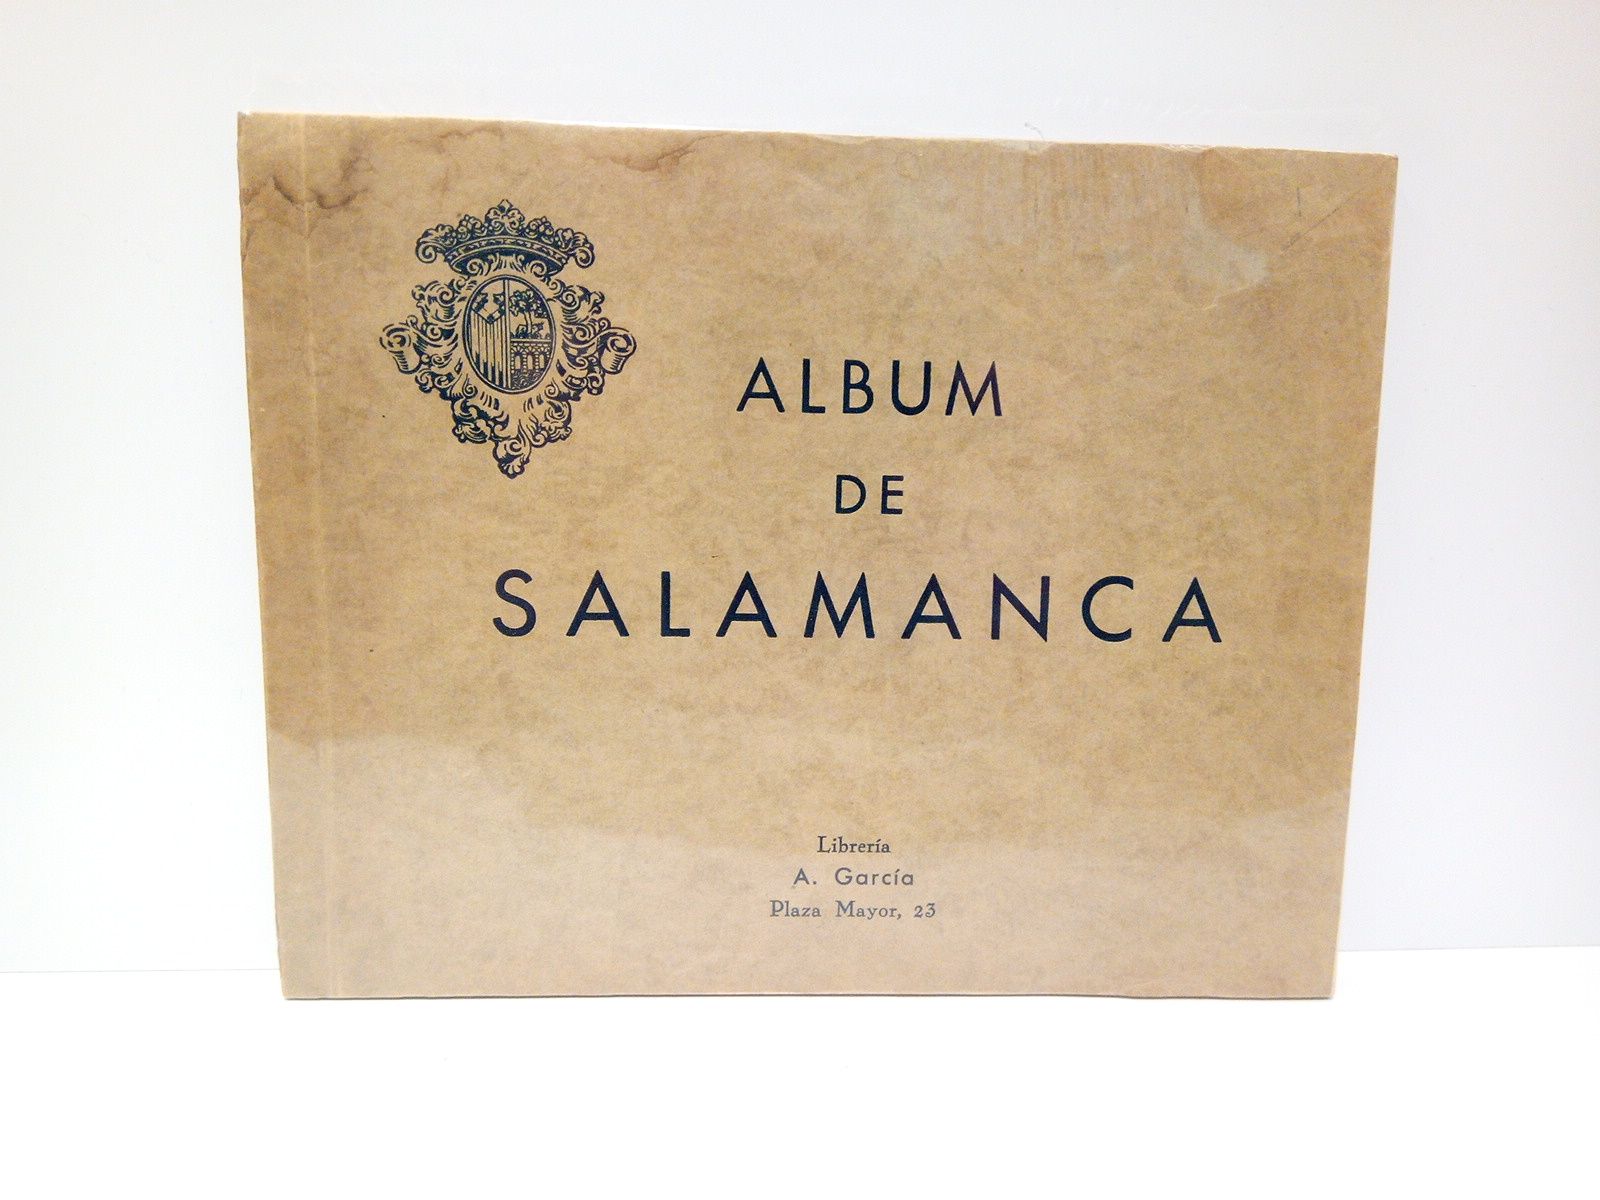 ALBUM DE SALAMANCA - Album de Salamanca / Huecograbado Hauser y Menet